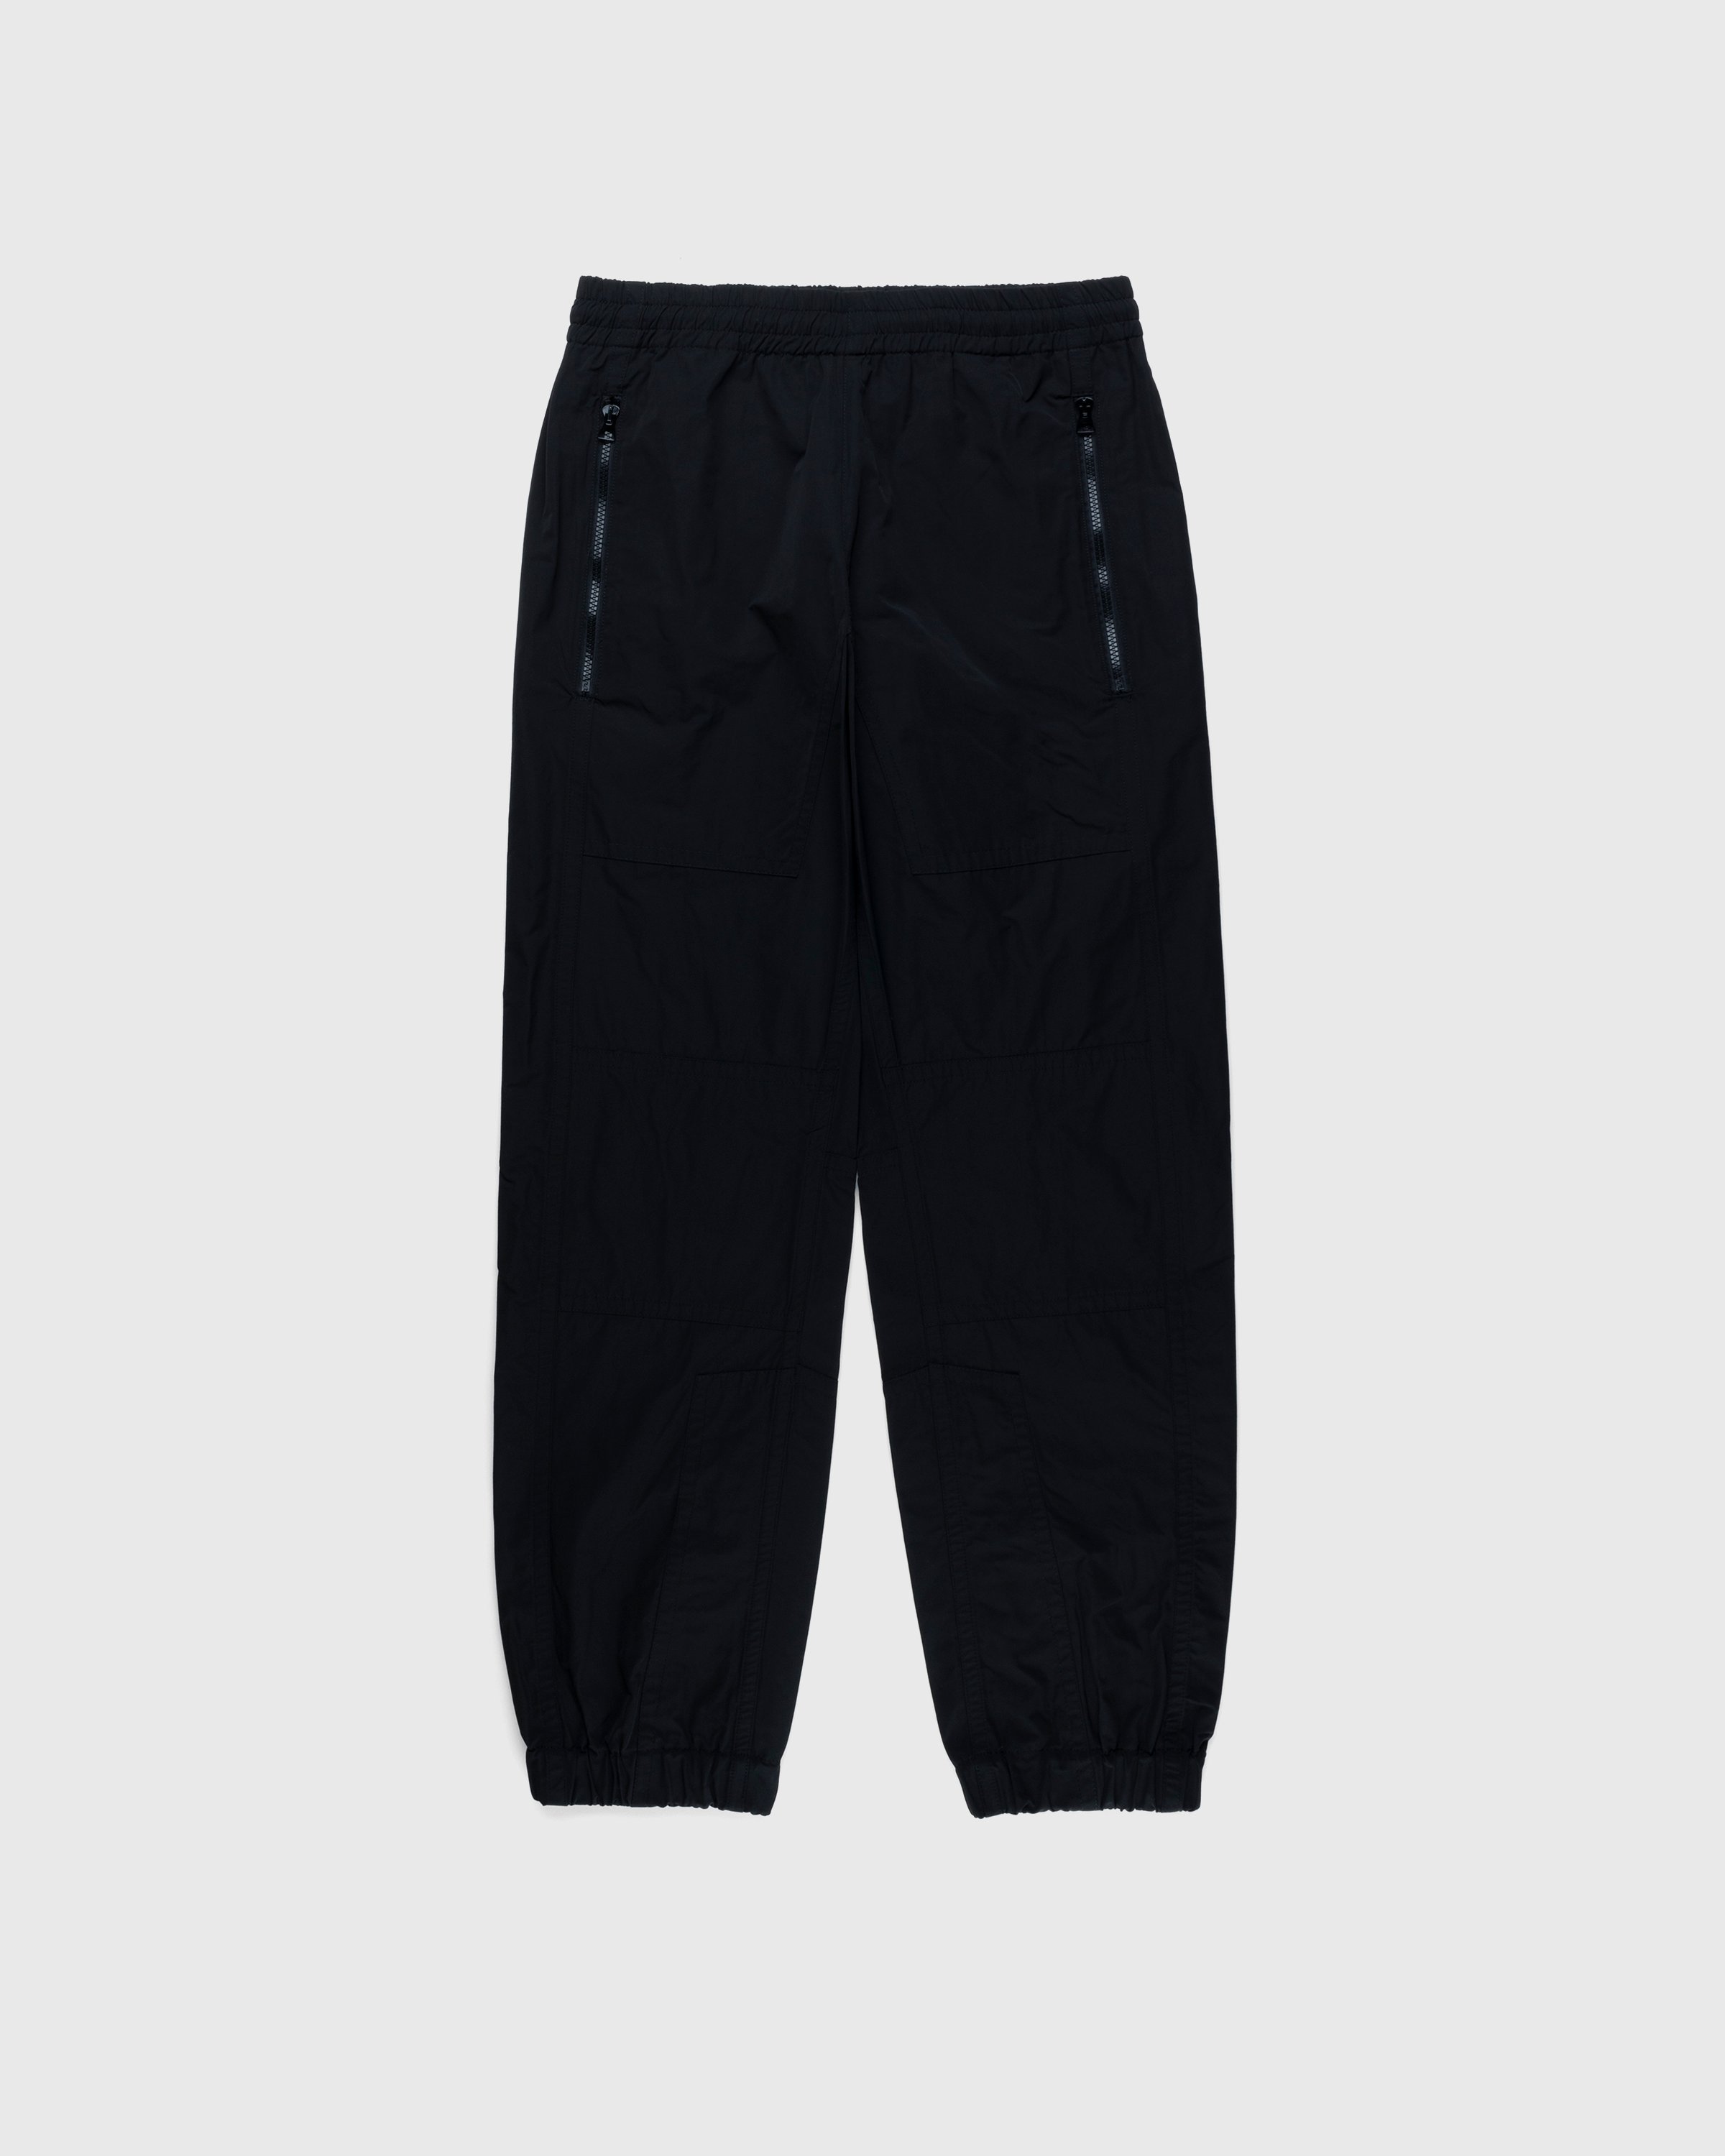 Dries van Noten - Peatt Pants - Clothing - Black - Image 1